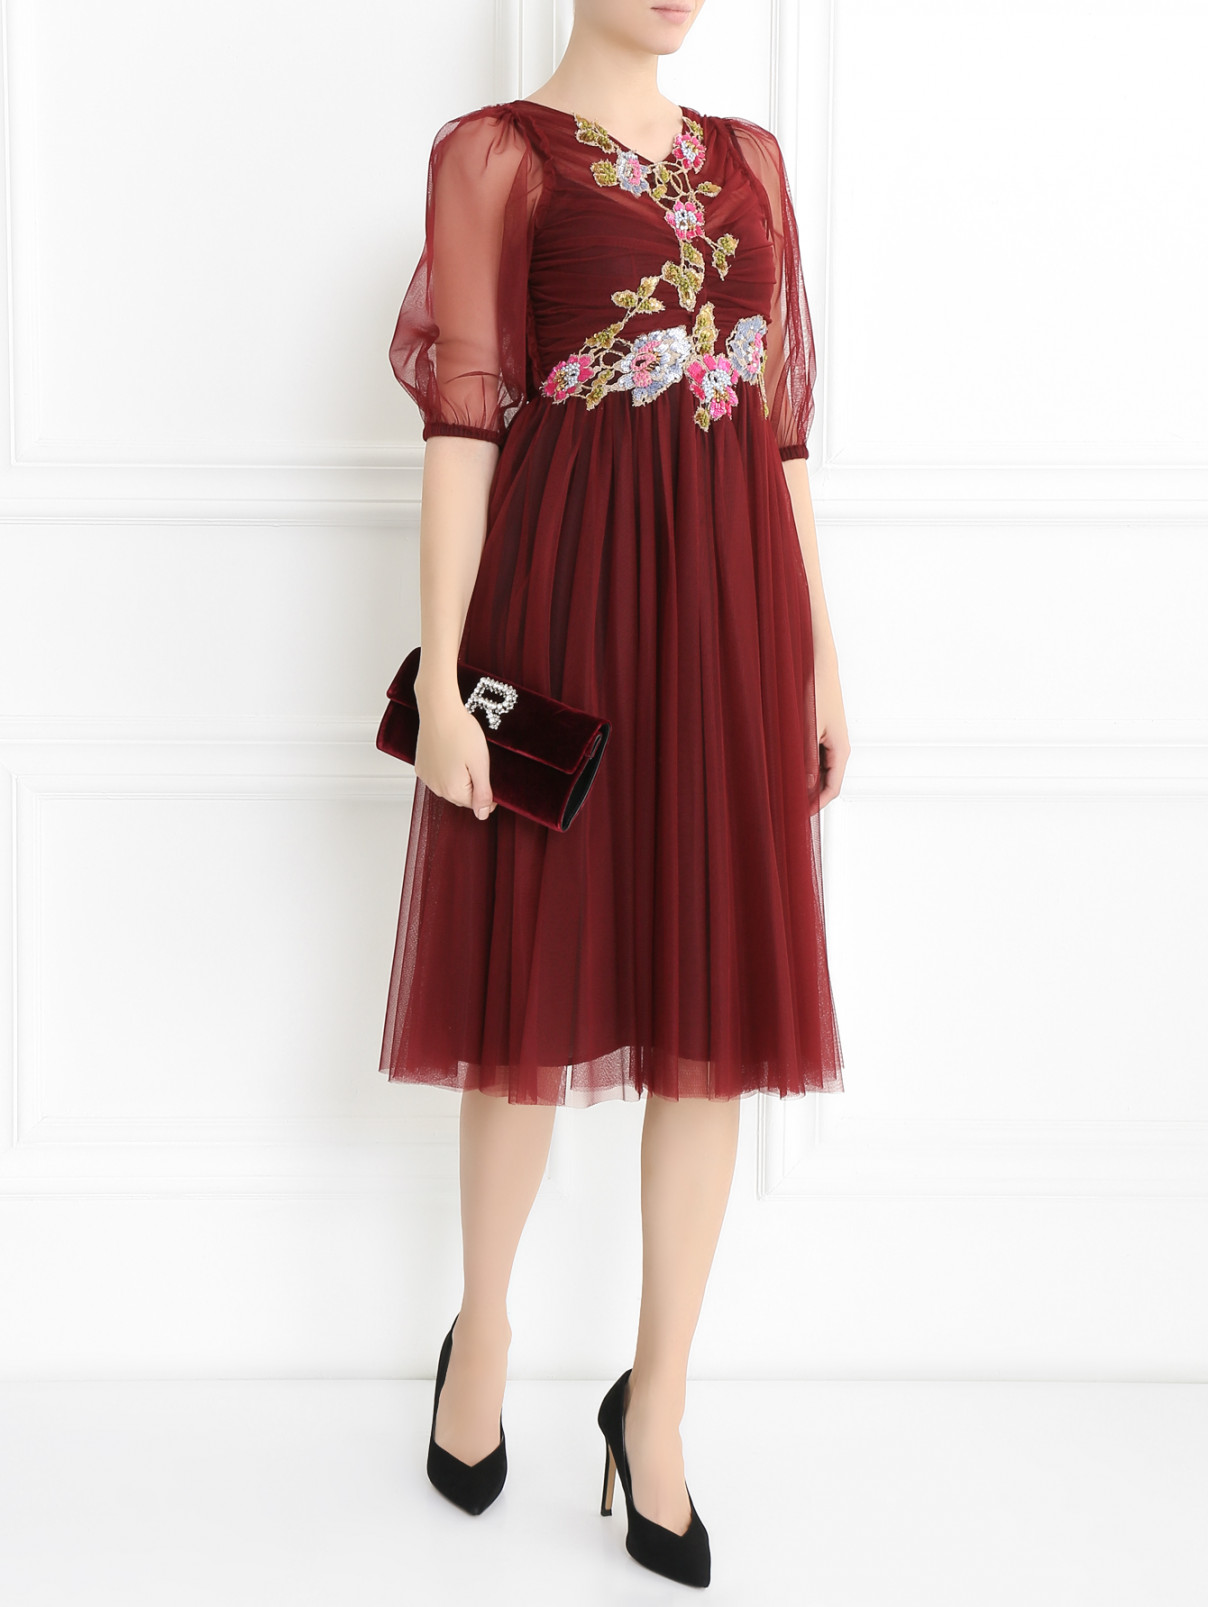 Полупрозрачное платье-миди декорированное вышивкой Antonio Marras  –  Модель Общий вид  – Цвет:  Красный